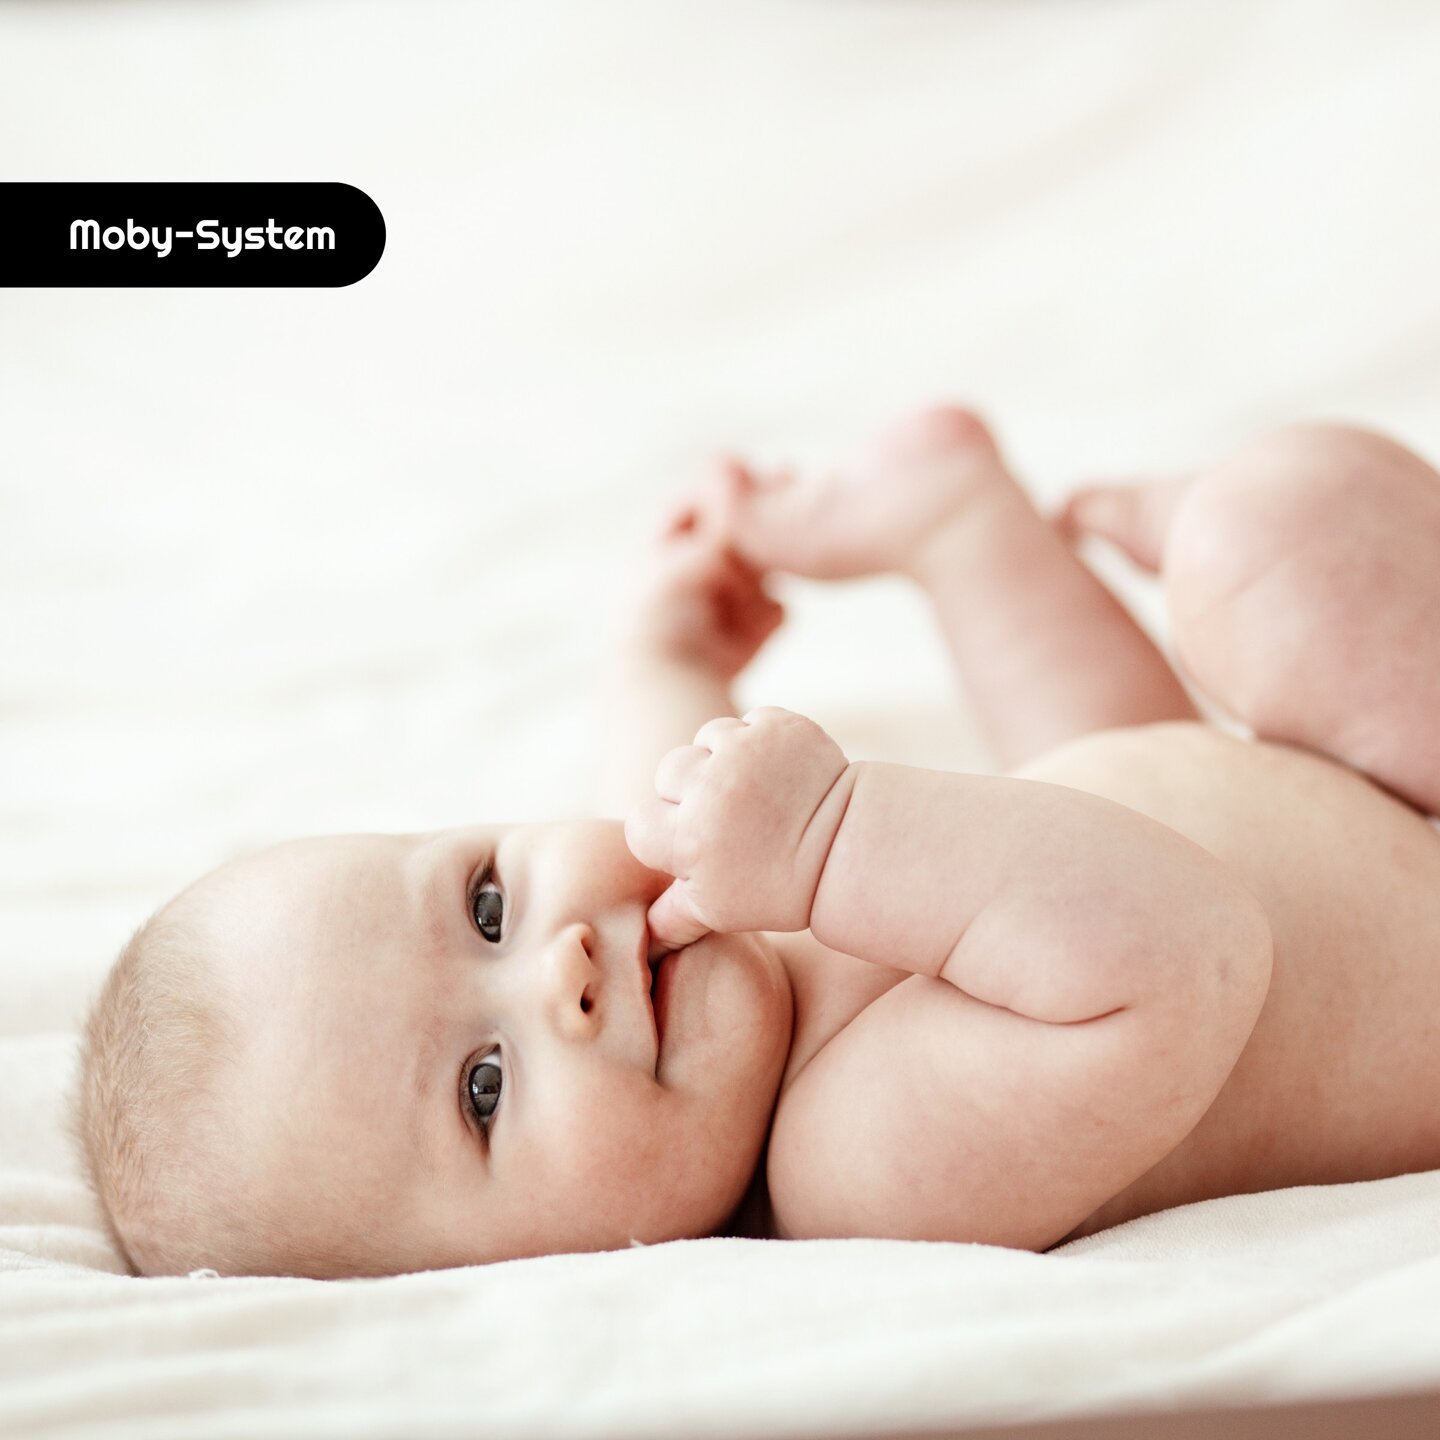 Ergonomiczne nosidełko dla niemowlaka - AMY 10w1 - 0-36 miesięcy, szare